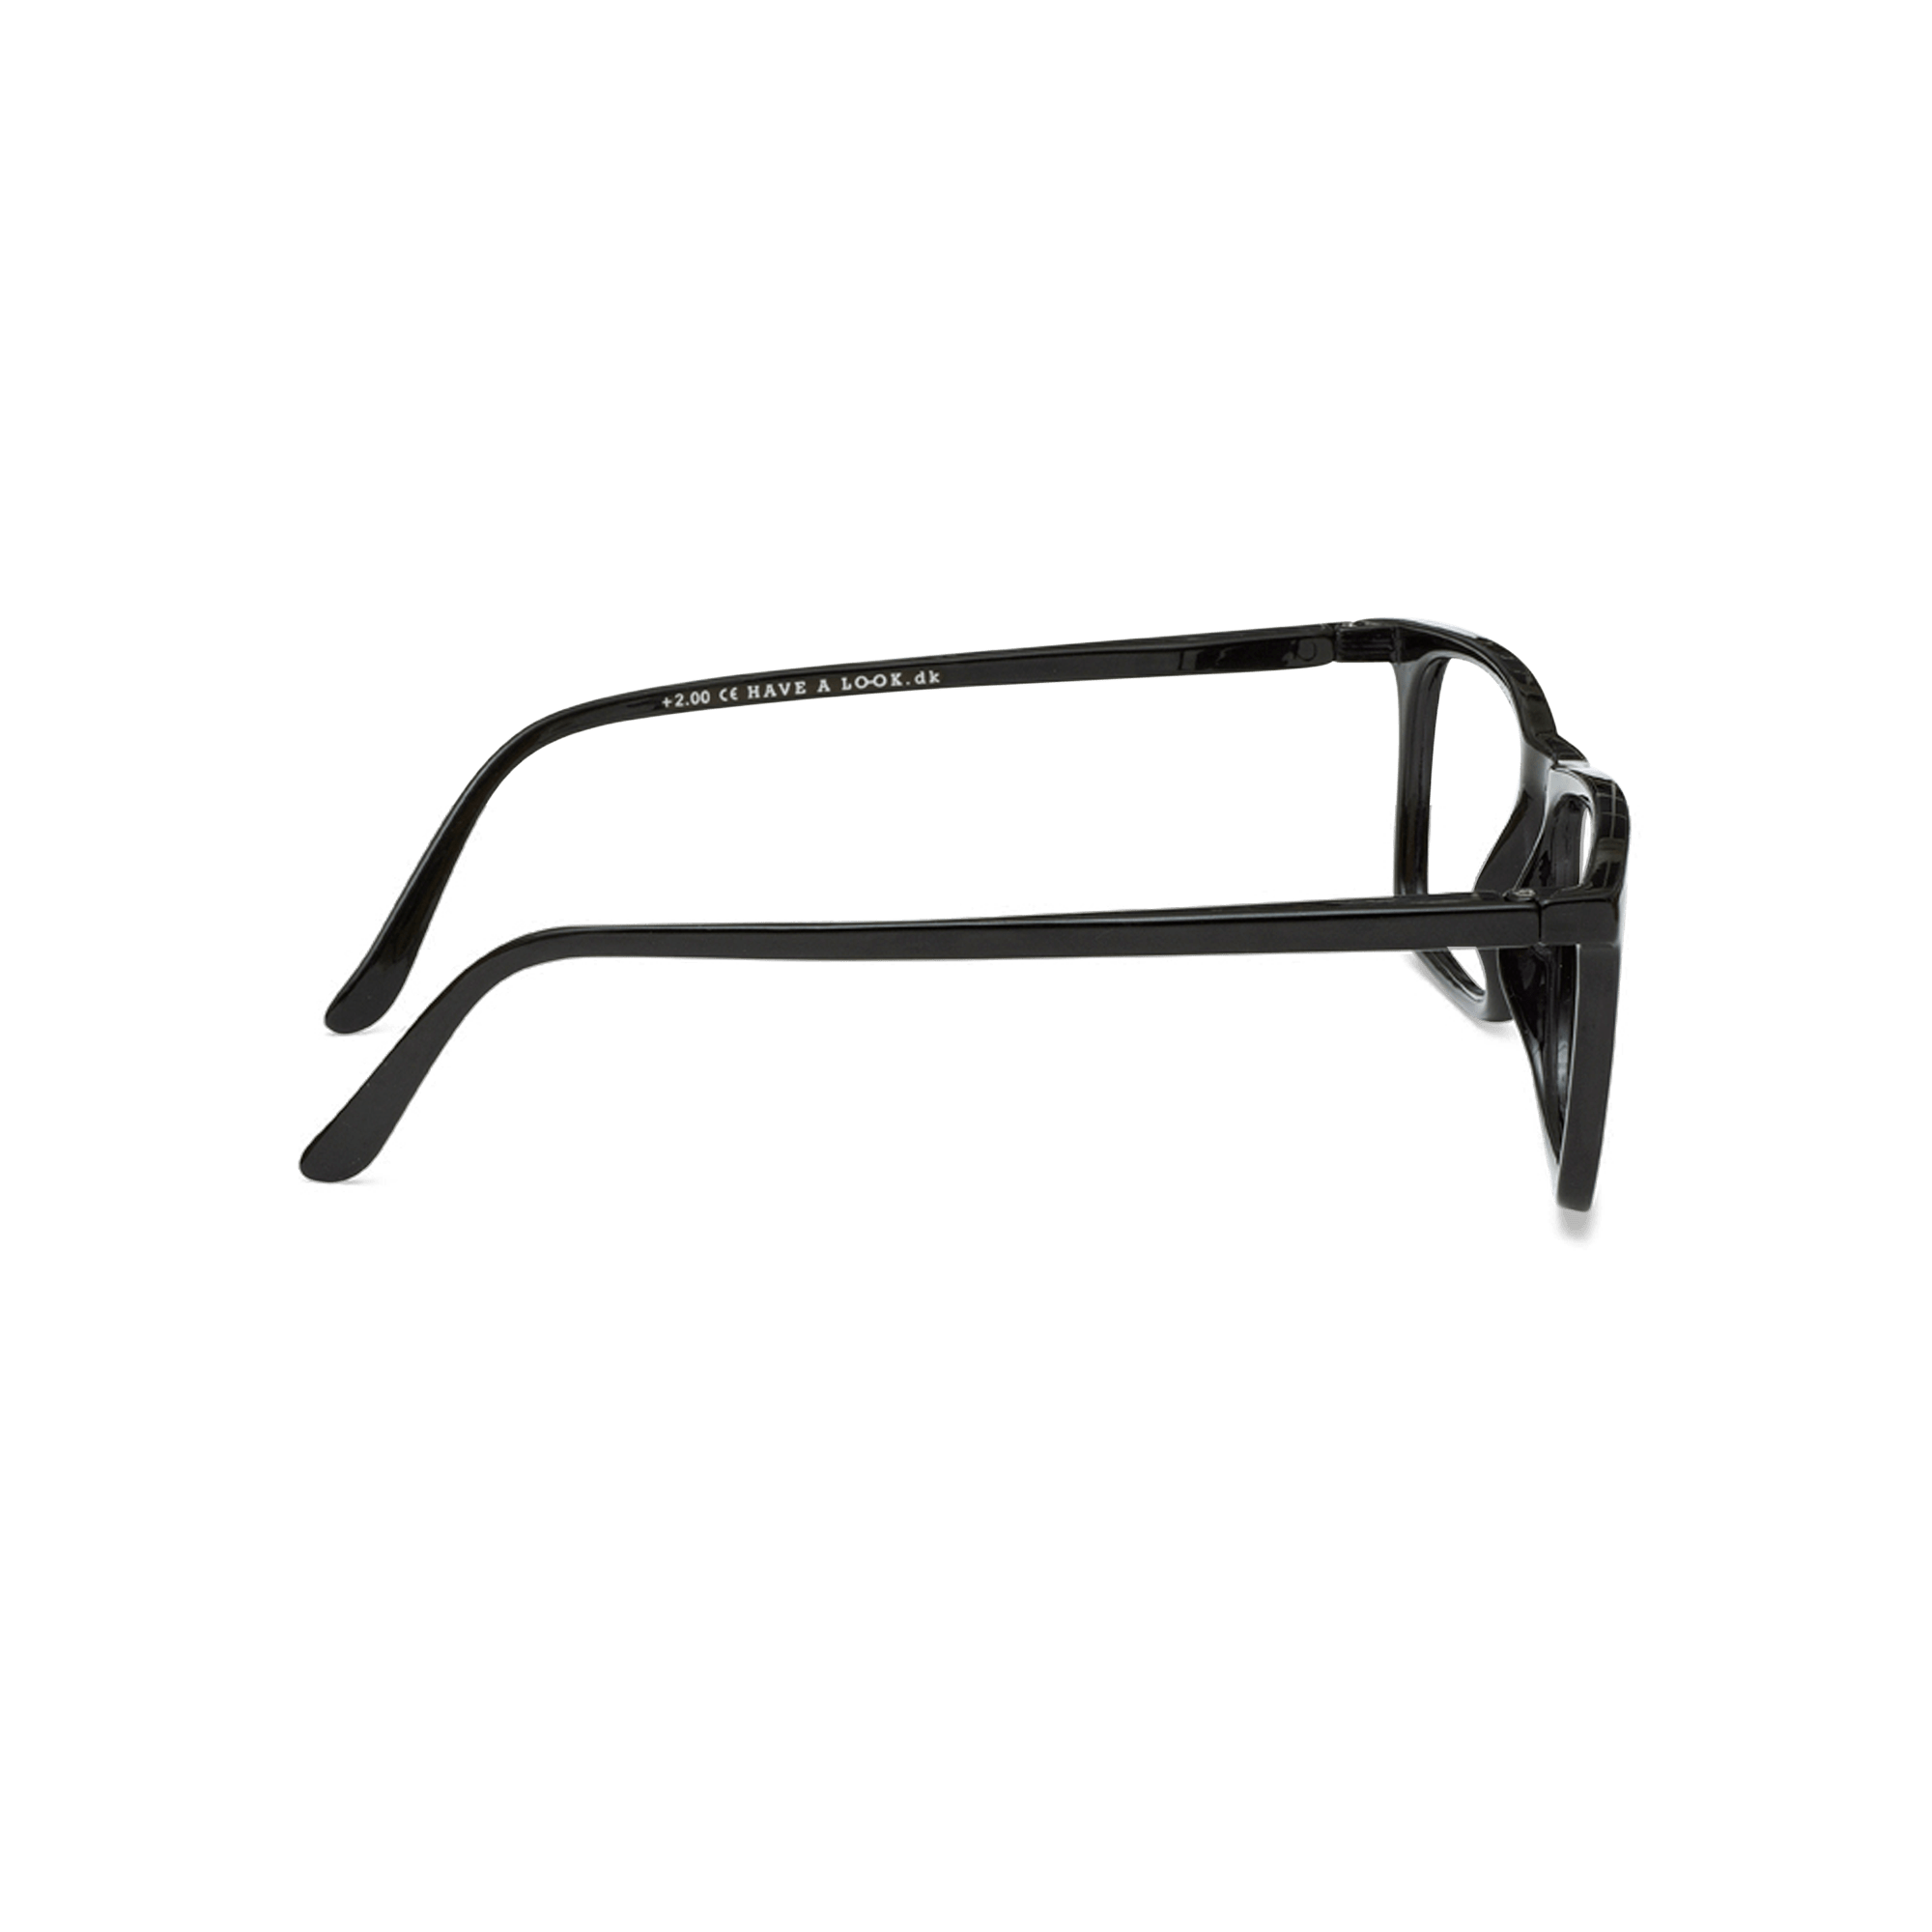 Læsebriller Type A - black